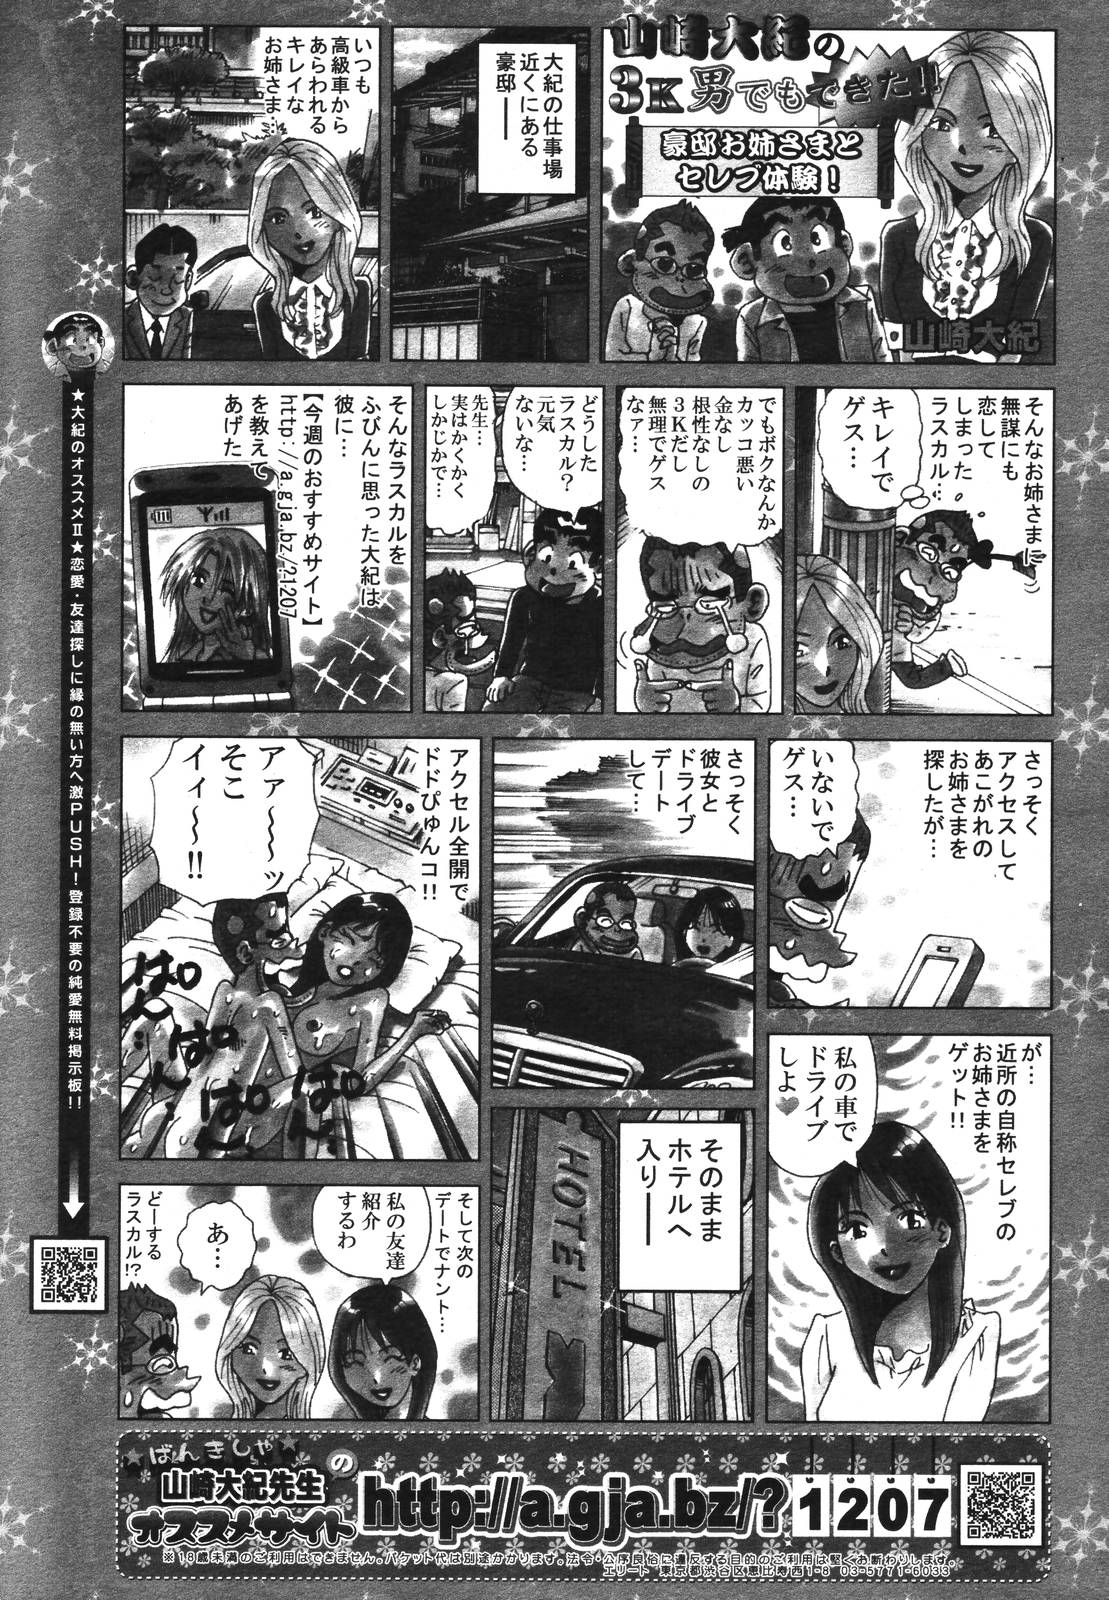 コミックメガプラスVol39 [2007-01]